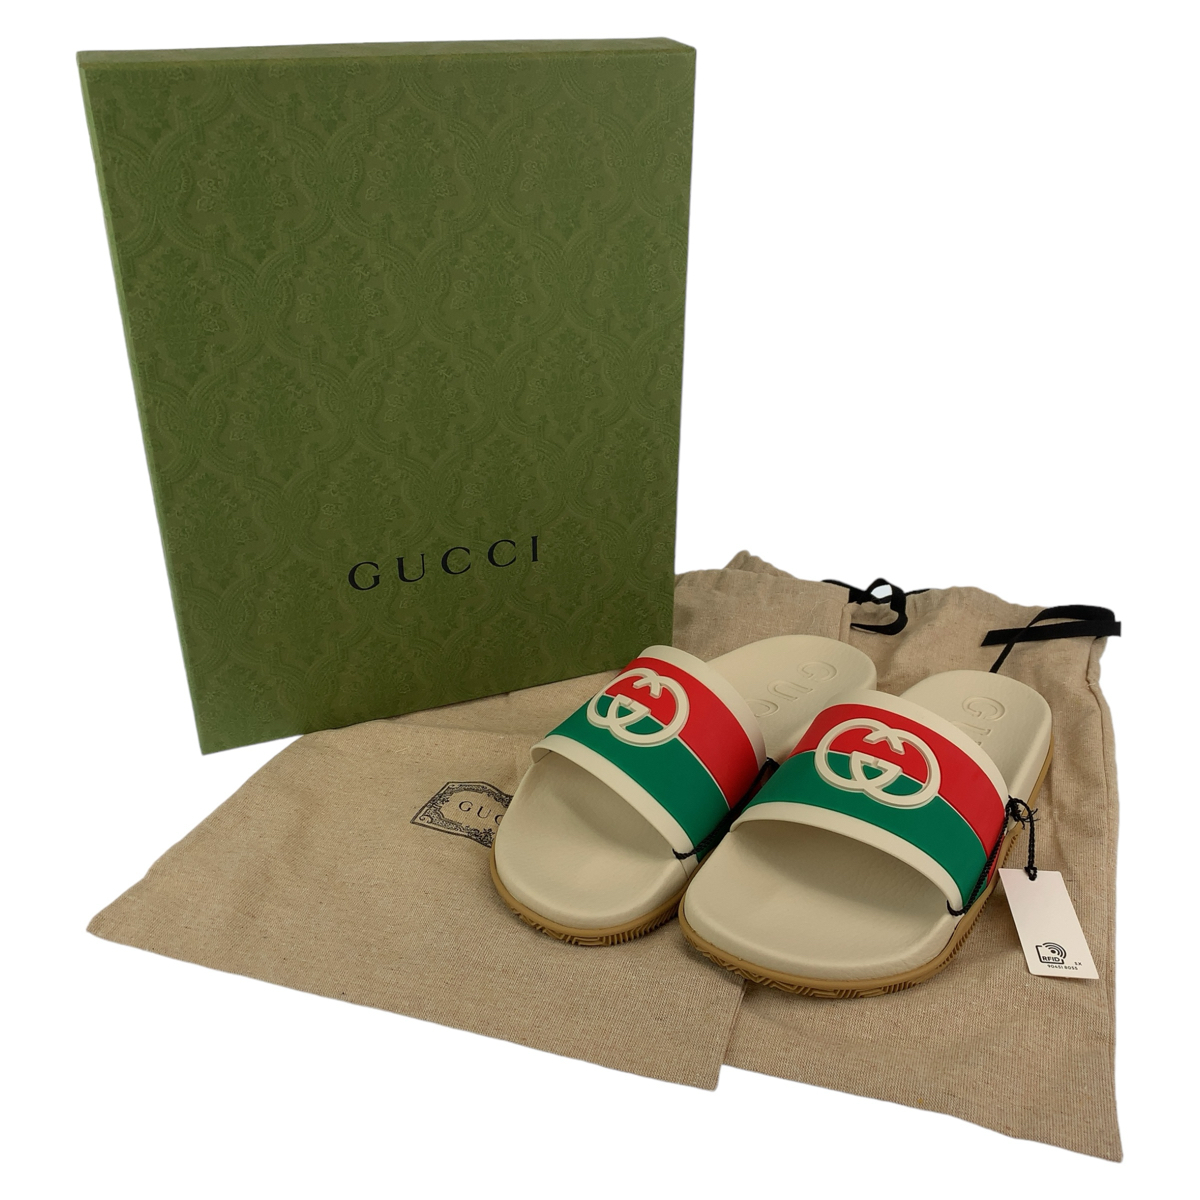  новый товар не использовался GUCCI Gucci Inter locking G размер 12 белый PVC 656265 сандалии пляжные шлепанцы мужской 405478 новый товар 